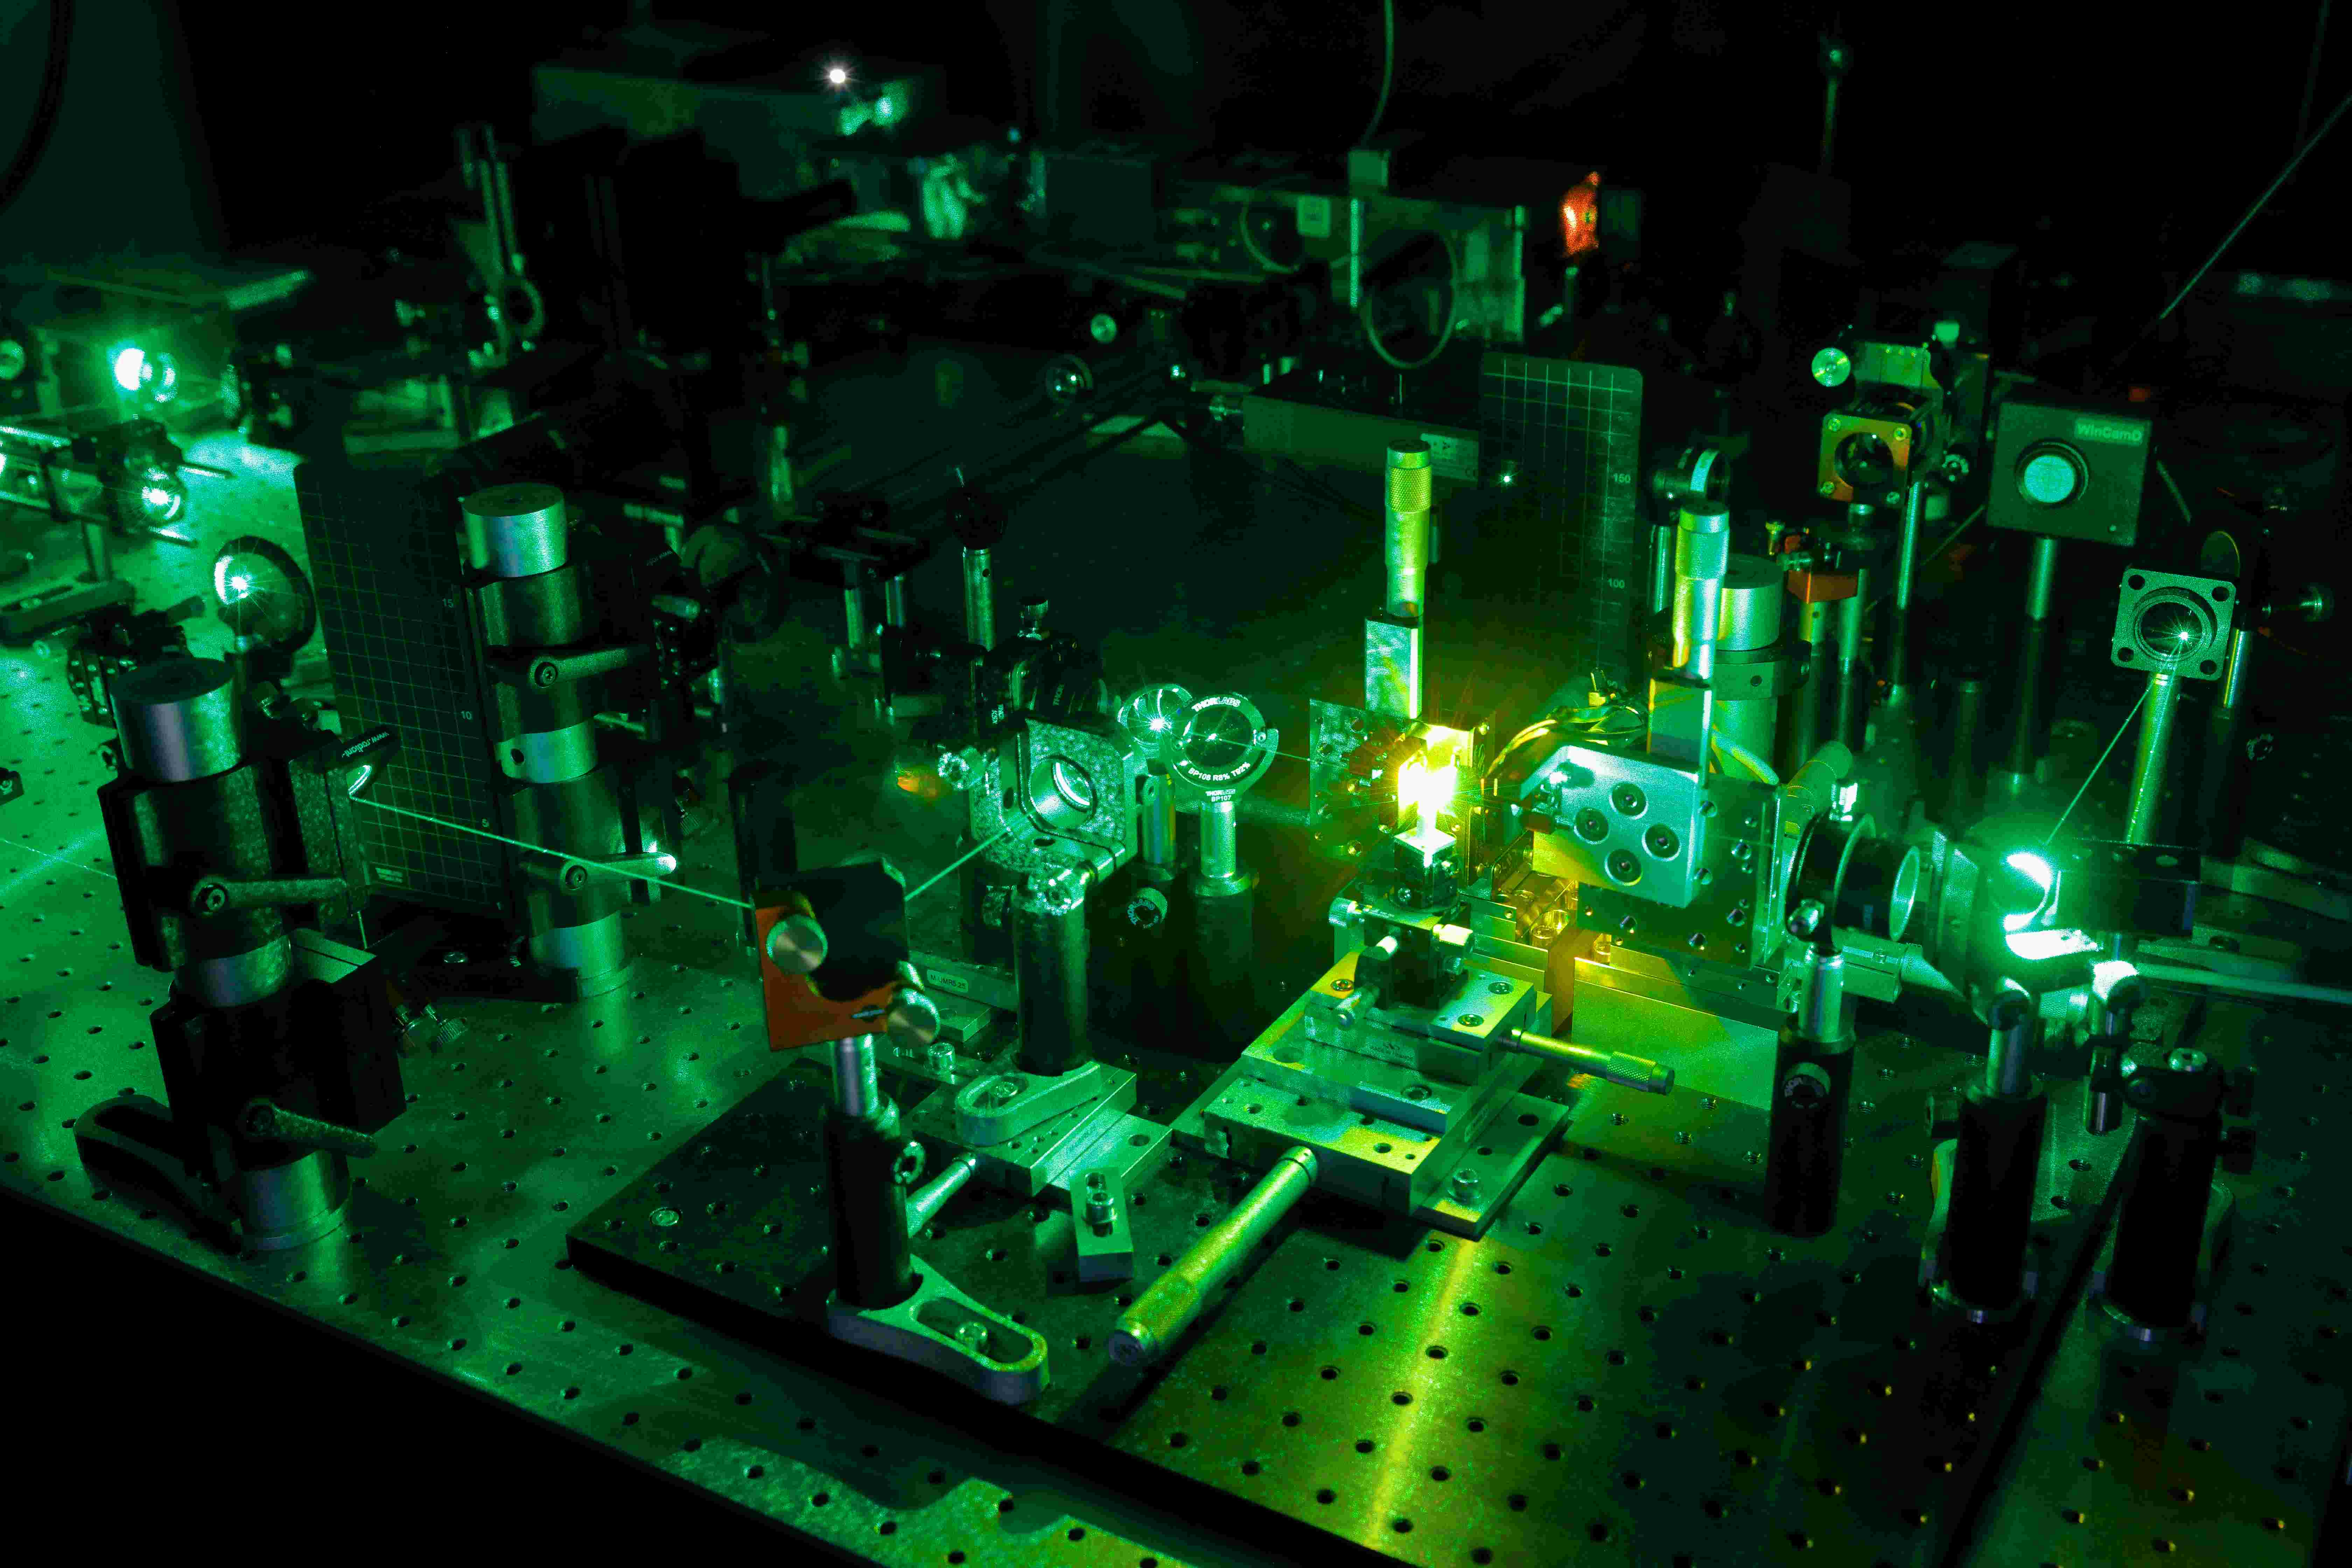 Laboraufbau, in dem ein grüner Laserstrahl durch verschiedene Instrumente fällt.